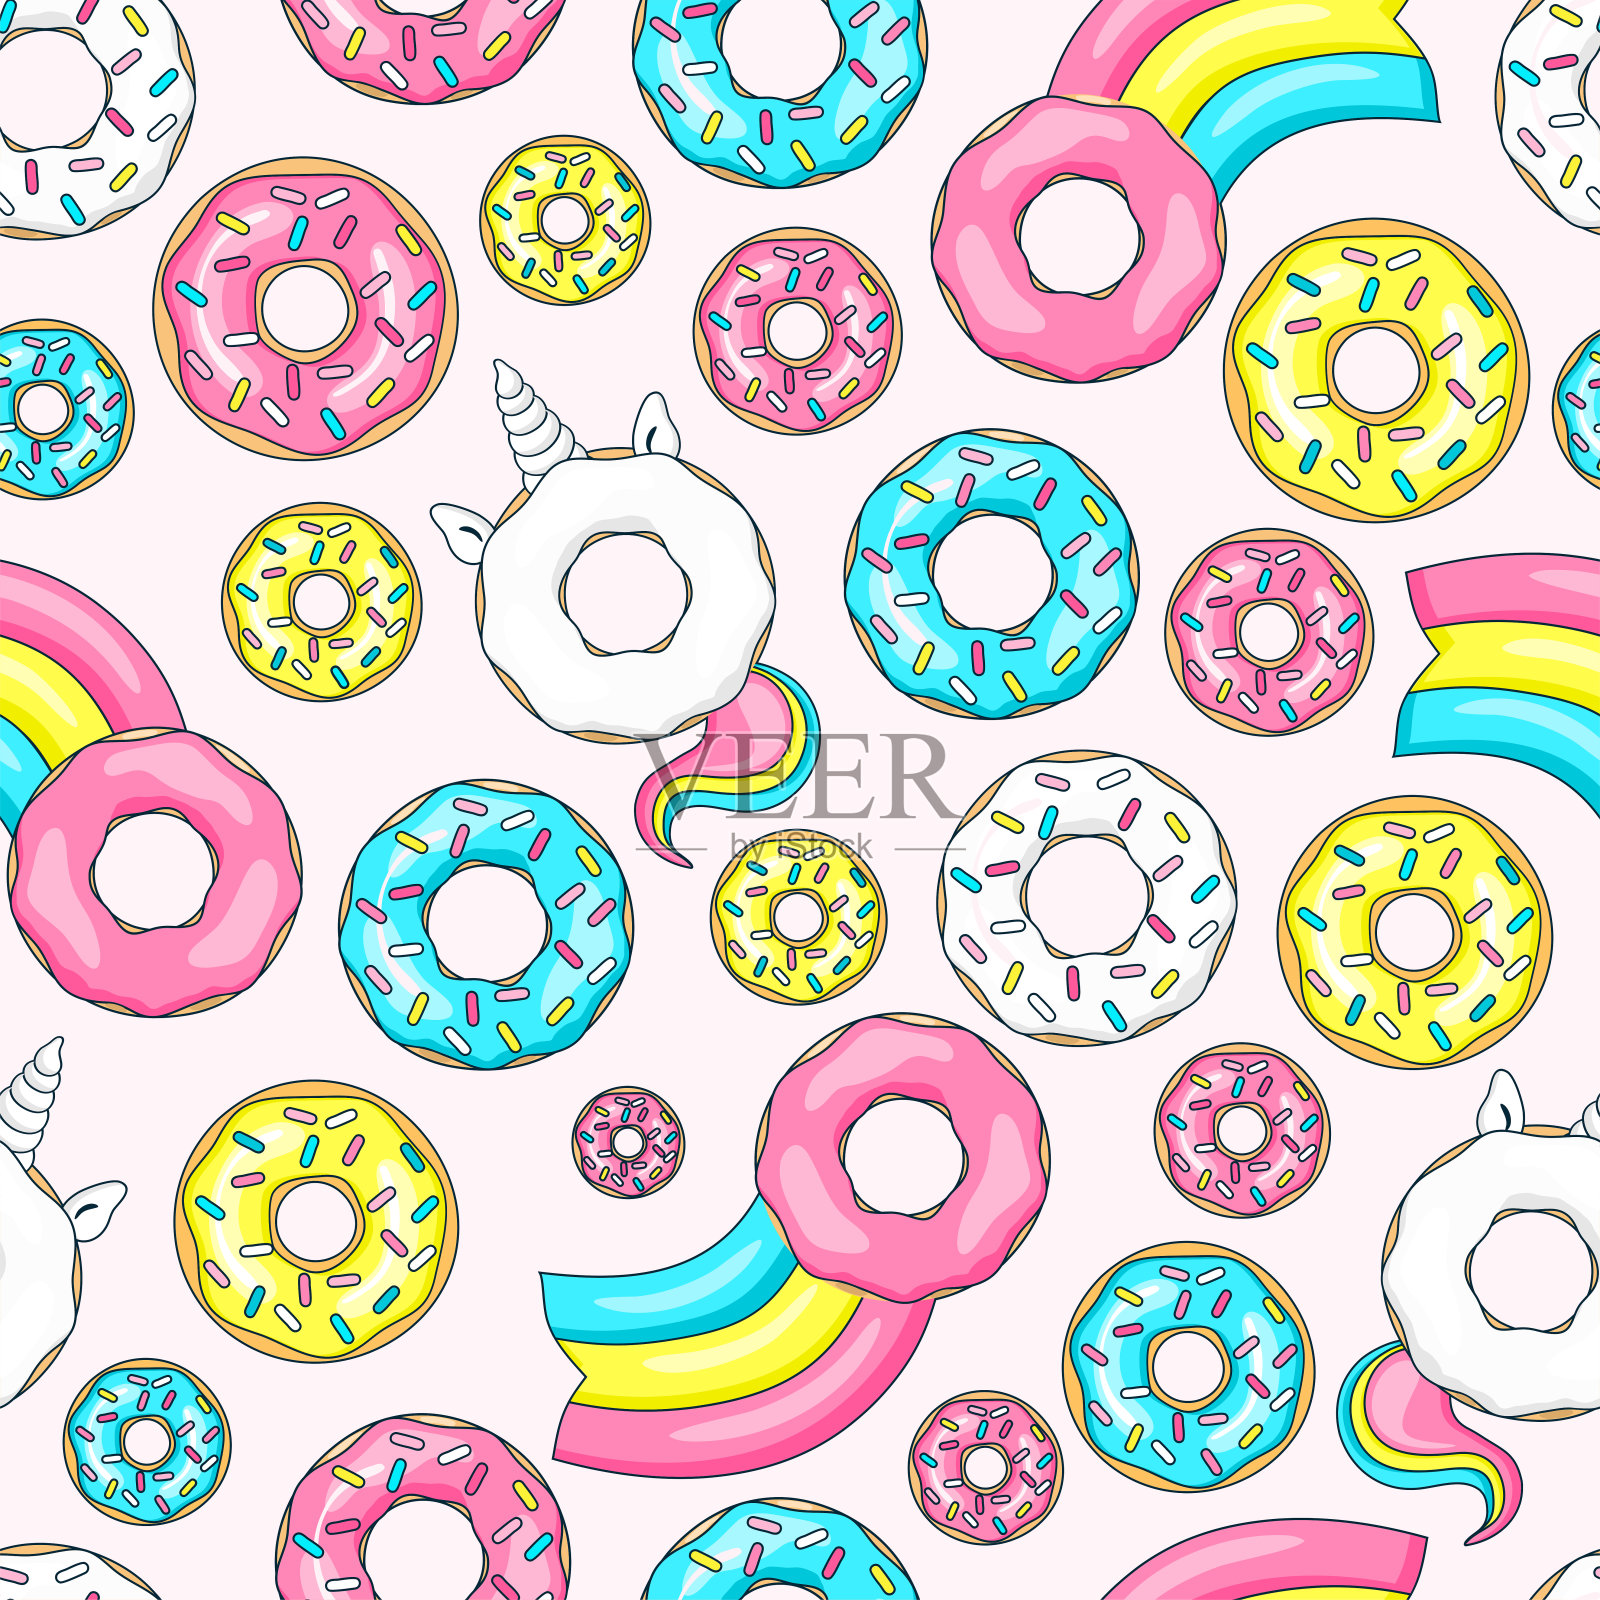 甜甜圈独角兽配白釉和彩虹尾巴，甜甜圈粉、蓝薄荷和柠檬黄，甜甜圈彗星配彩虹。无缝模式。矢量图插画图片素材